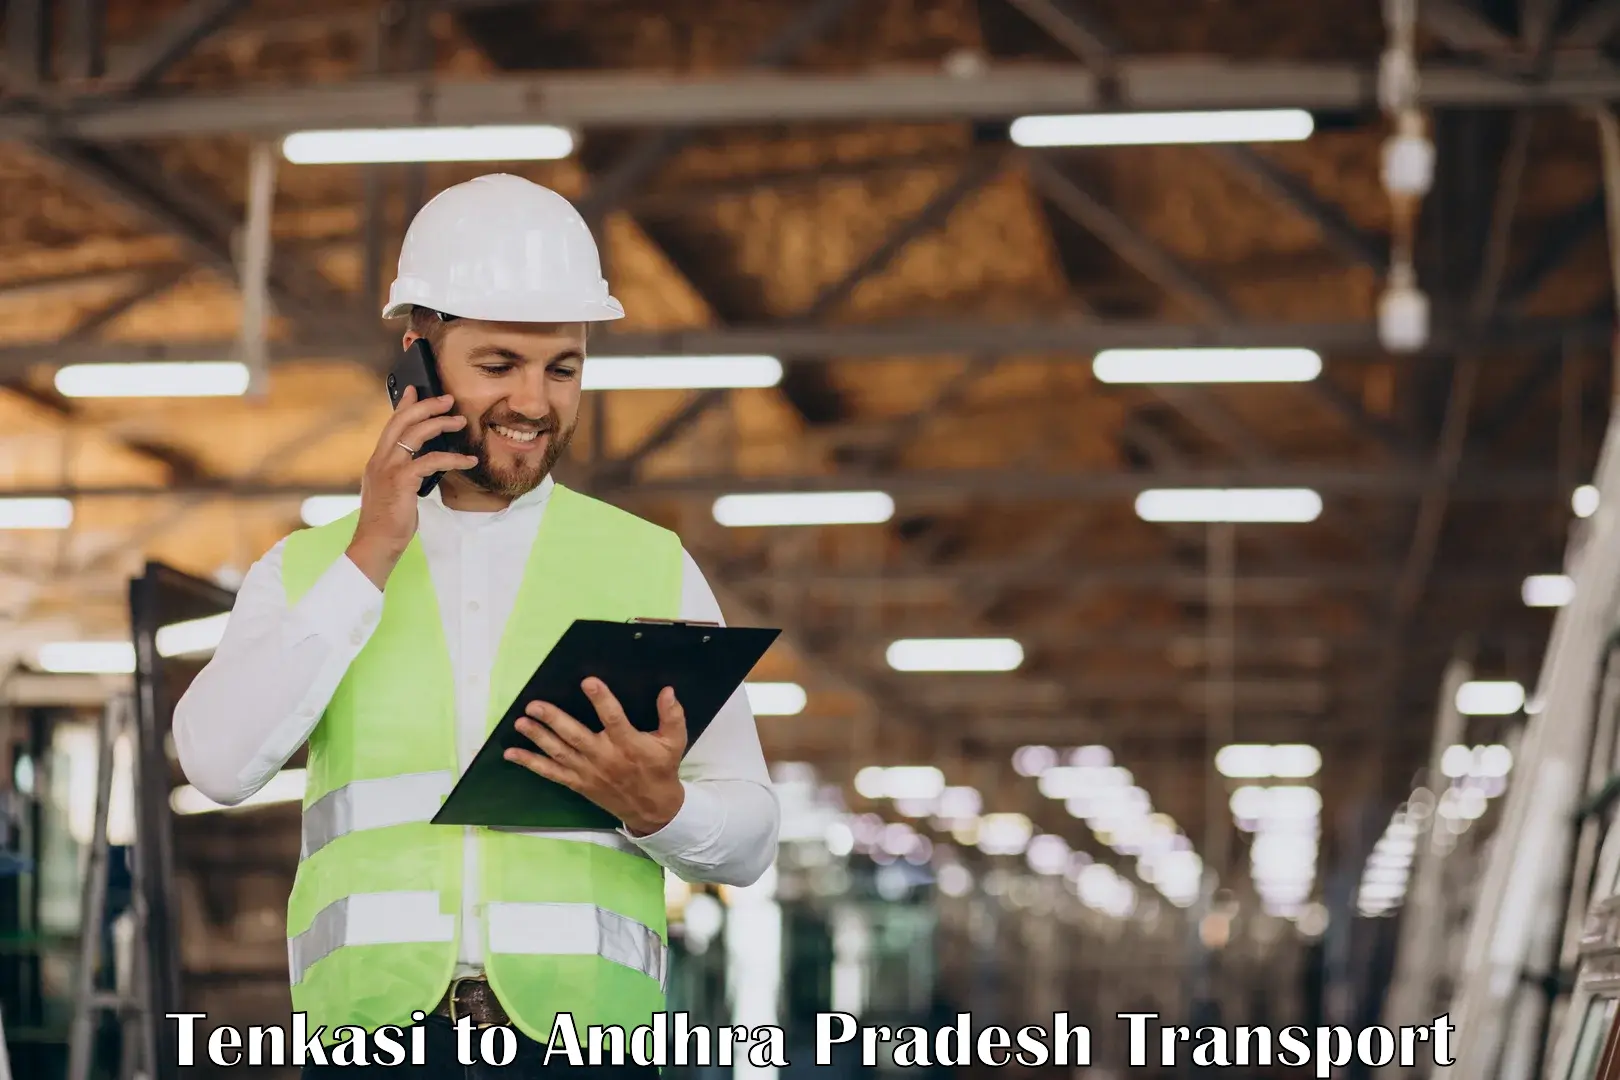 India truck logistics services Tenkasi to Kudair